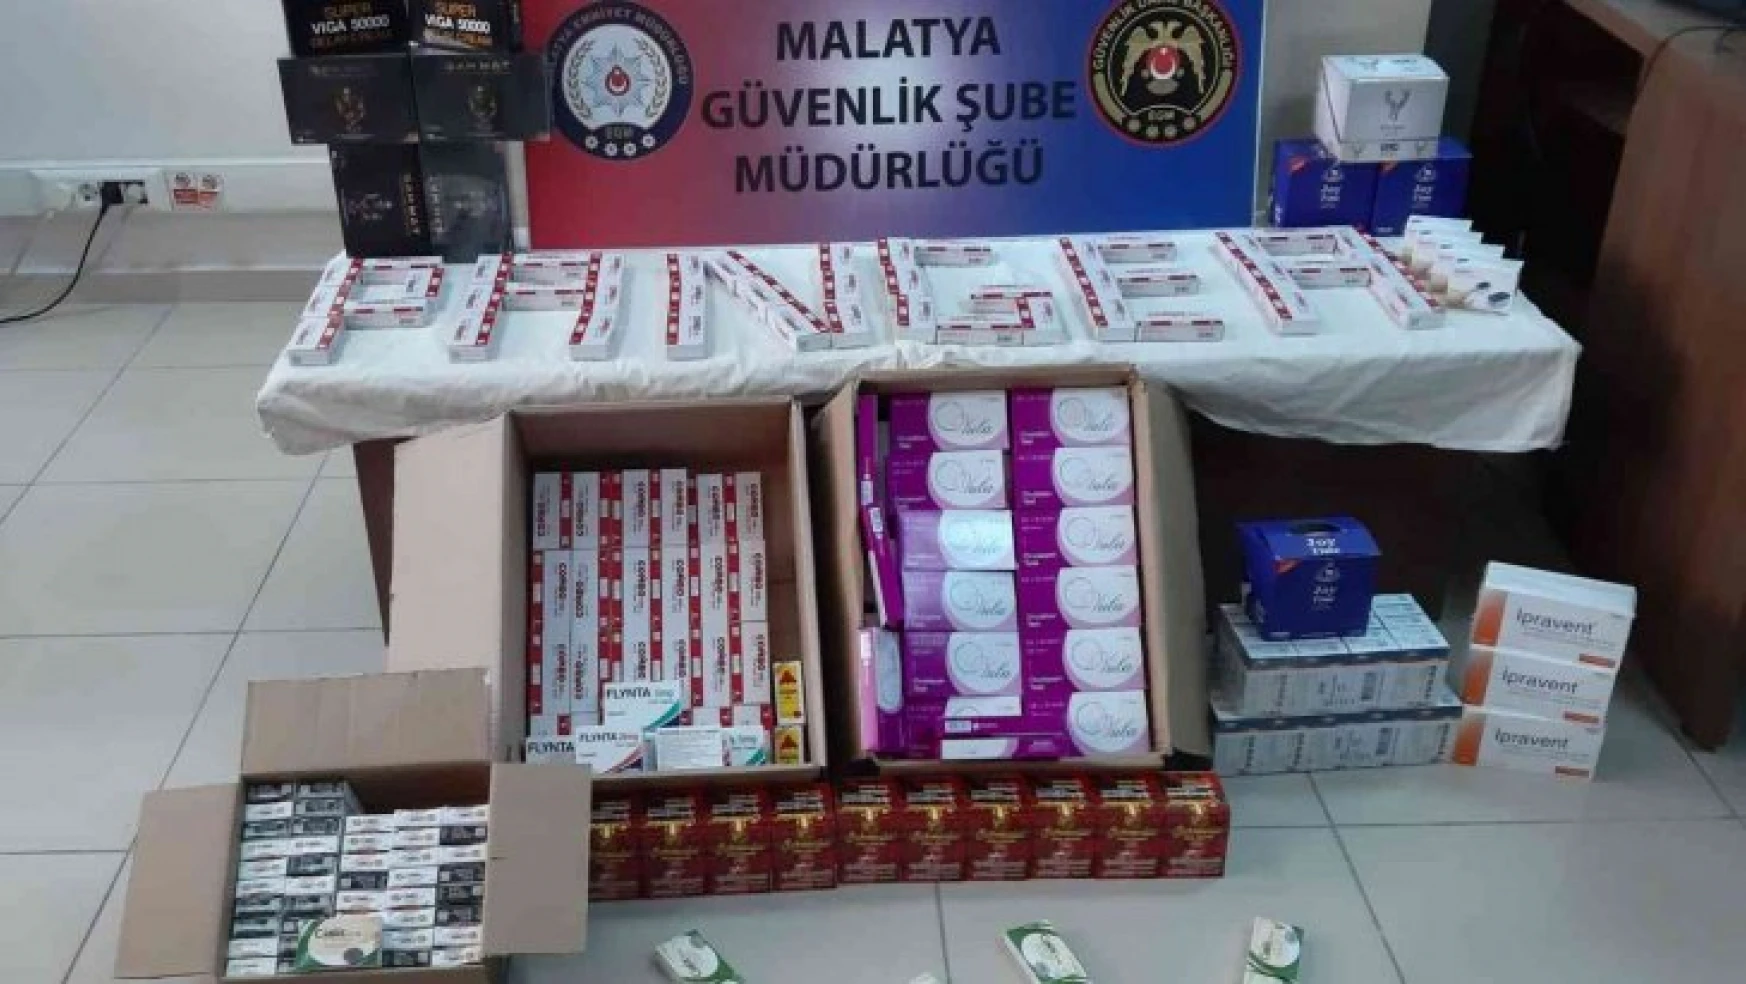 Malatya'da bin 711 adet kaçak cinsel içerikli ürün ele geçirildi